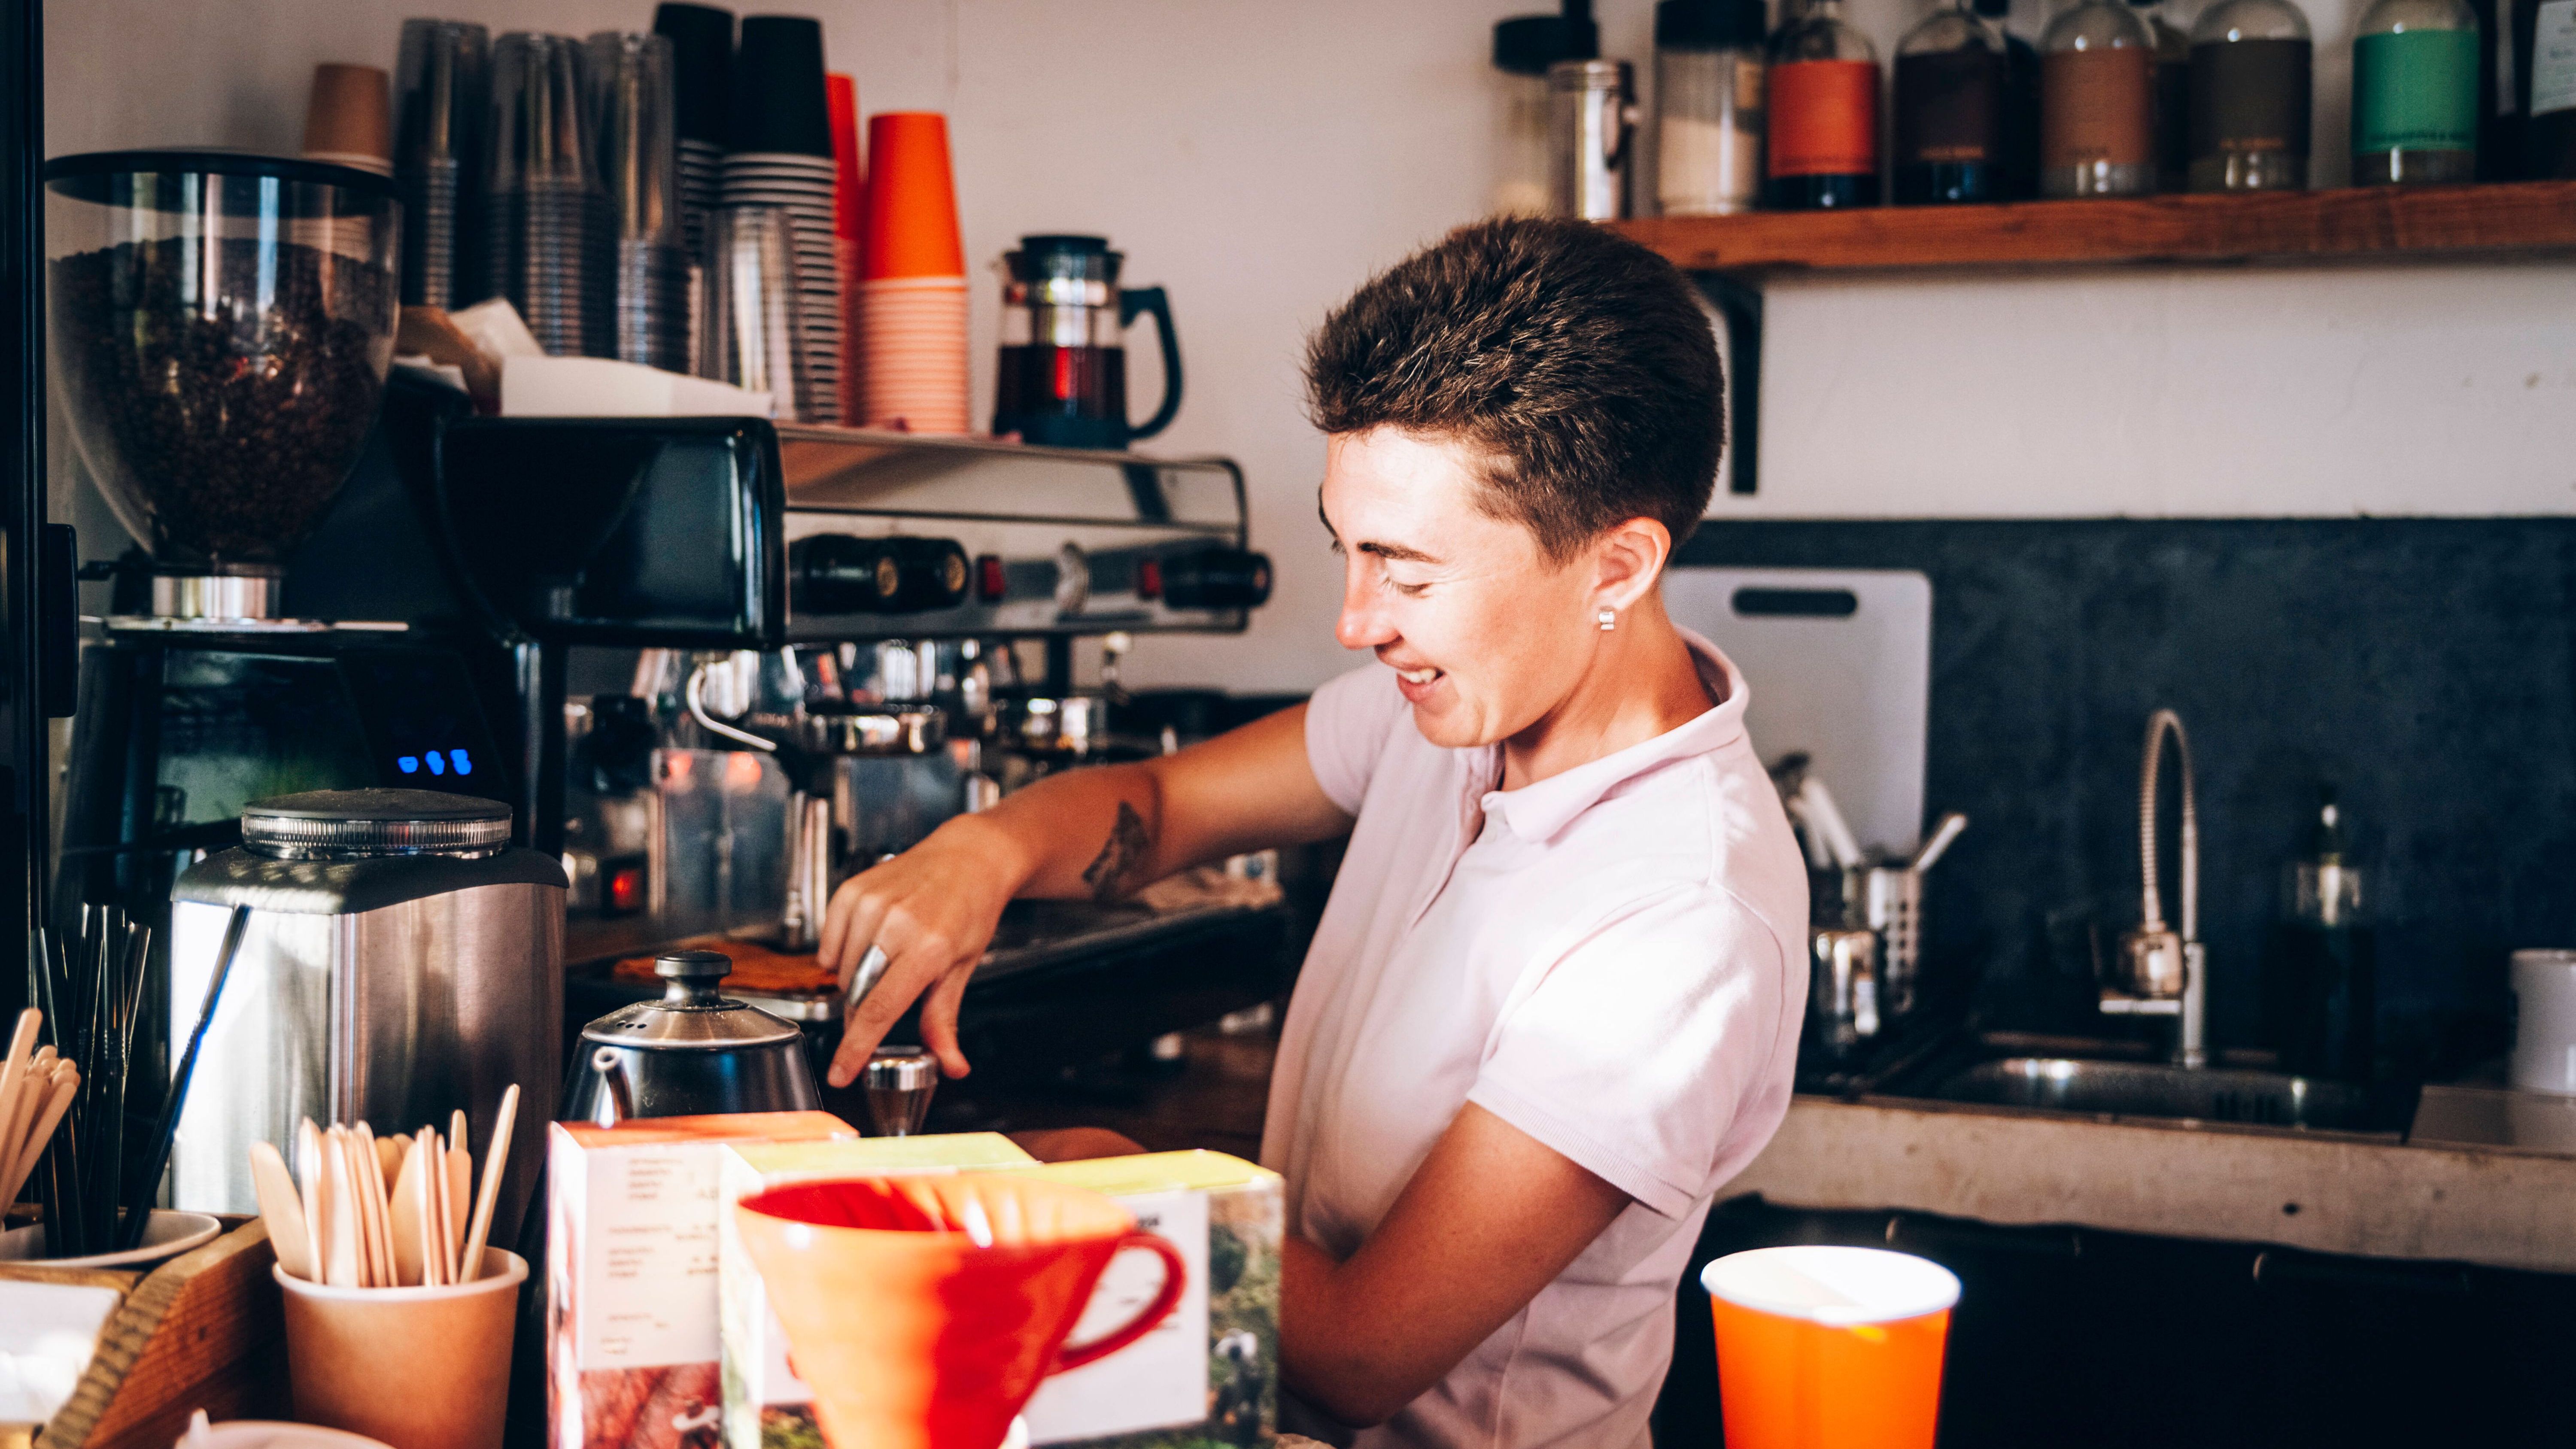 Kaffee macht einfach happy! Wir zeigen dir ein paar geniale Kaffee-Hacks, die dein Leben leichter machen!